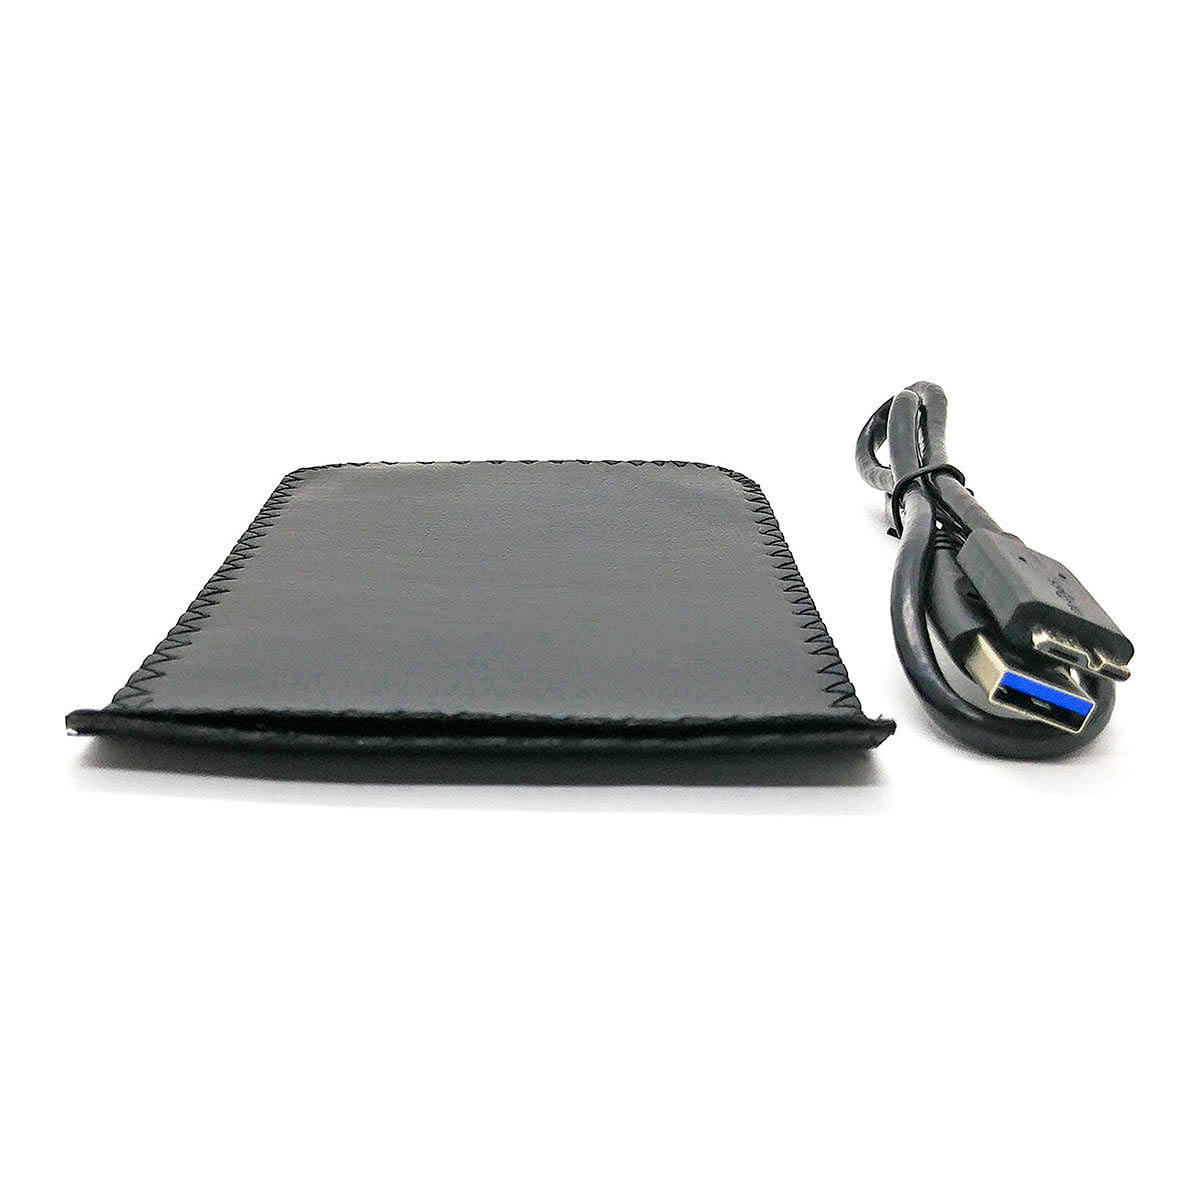 Gaveta para HD Externo USB 3.0 para SATA SSD 2.5" Case Resistente e Transparente com Capa de Proteção Infokit Ecase-320